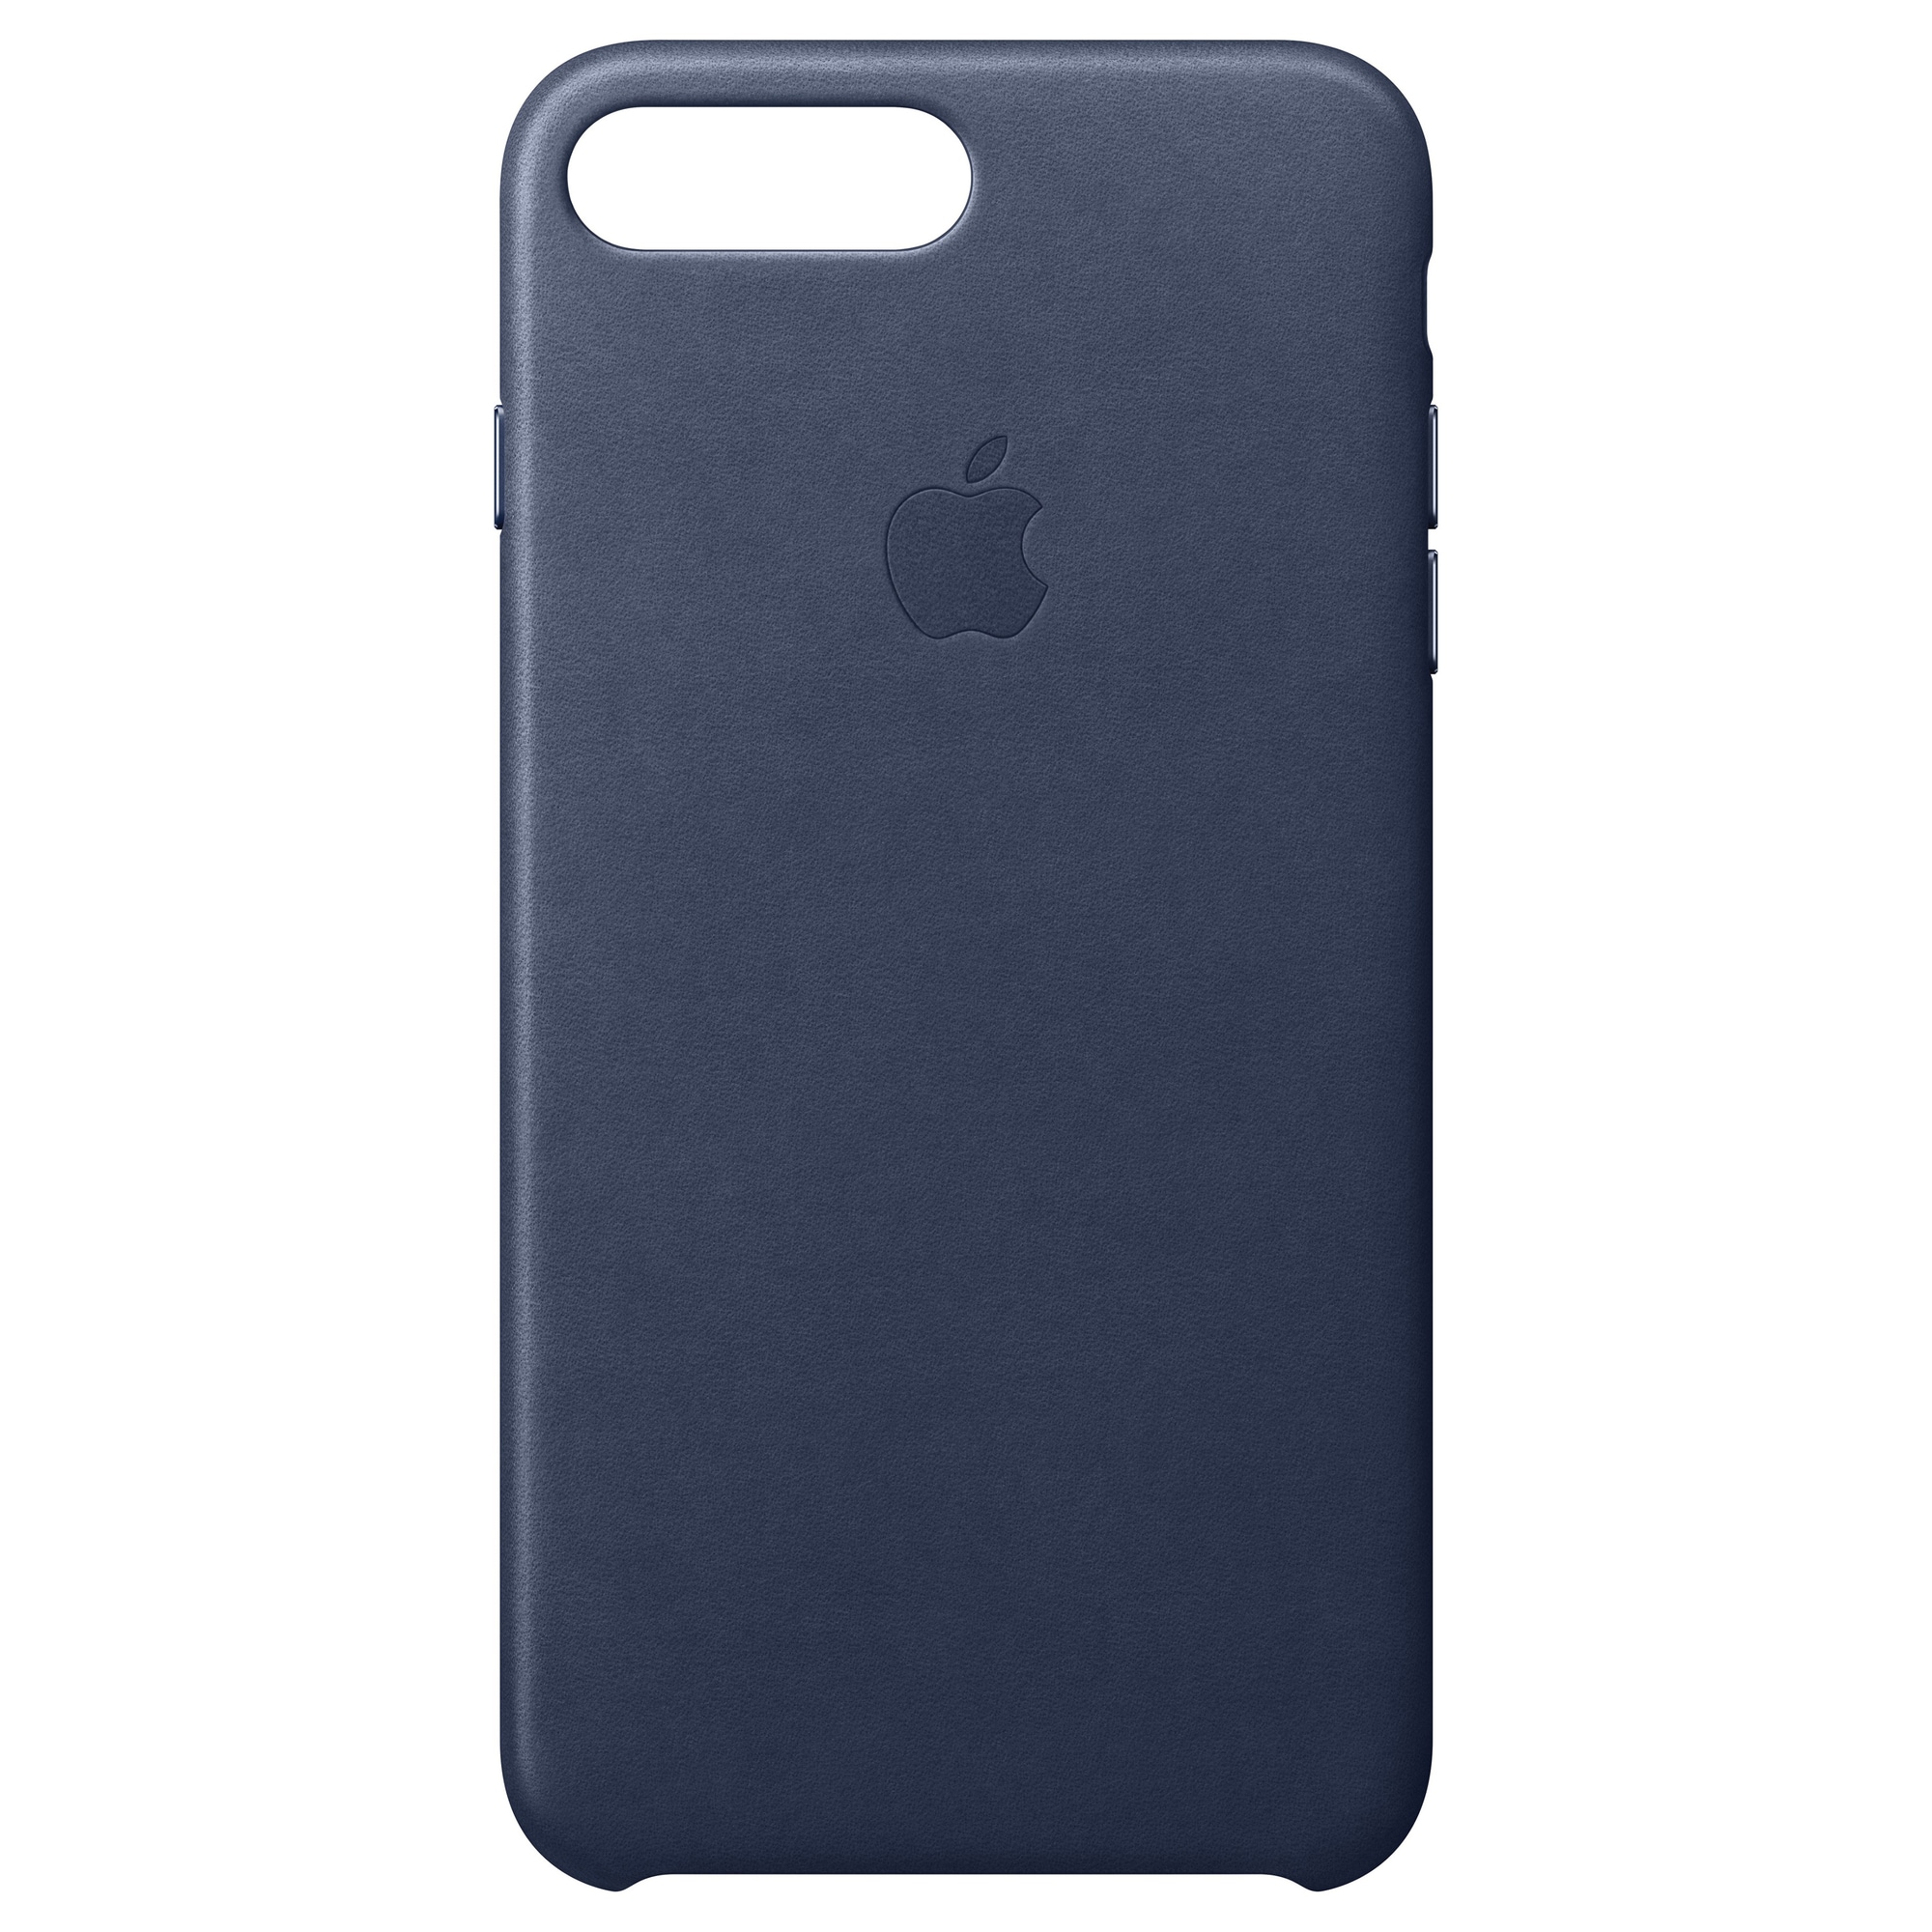 iPhone 8 Plus skinndeksel (midnattsblå) - Elkjøp